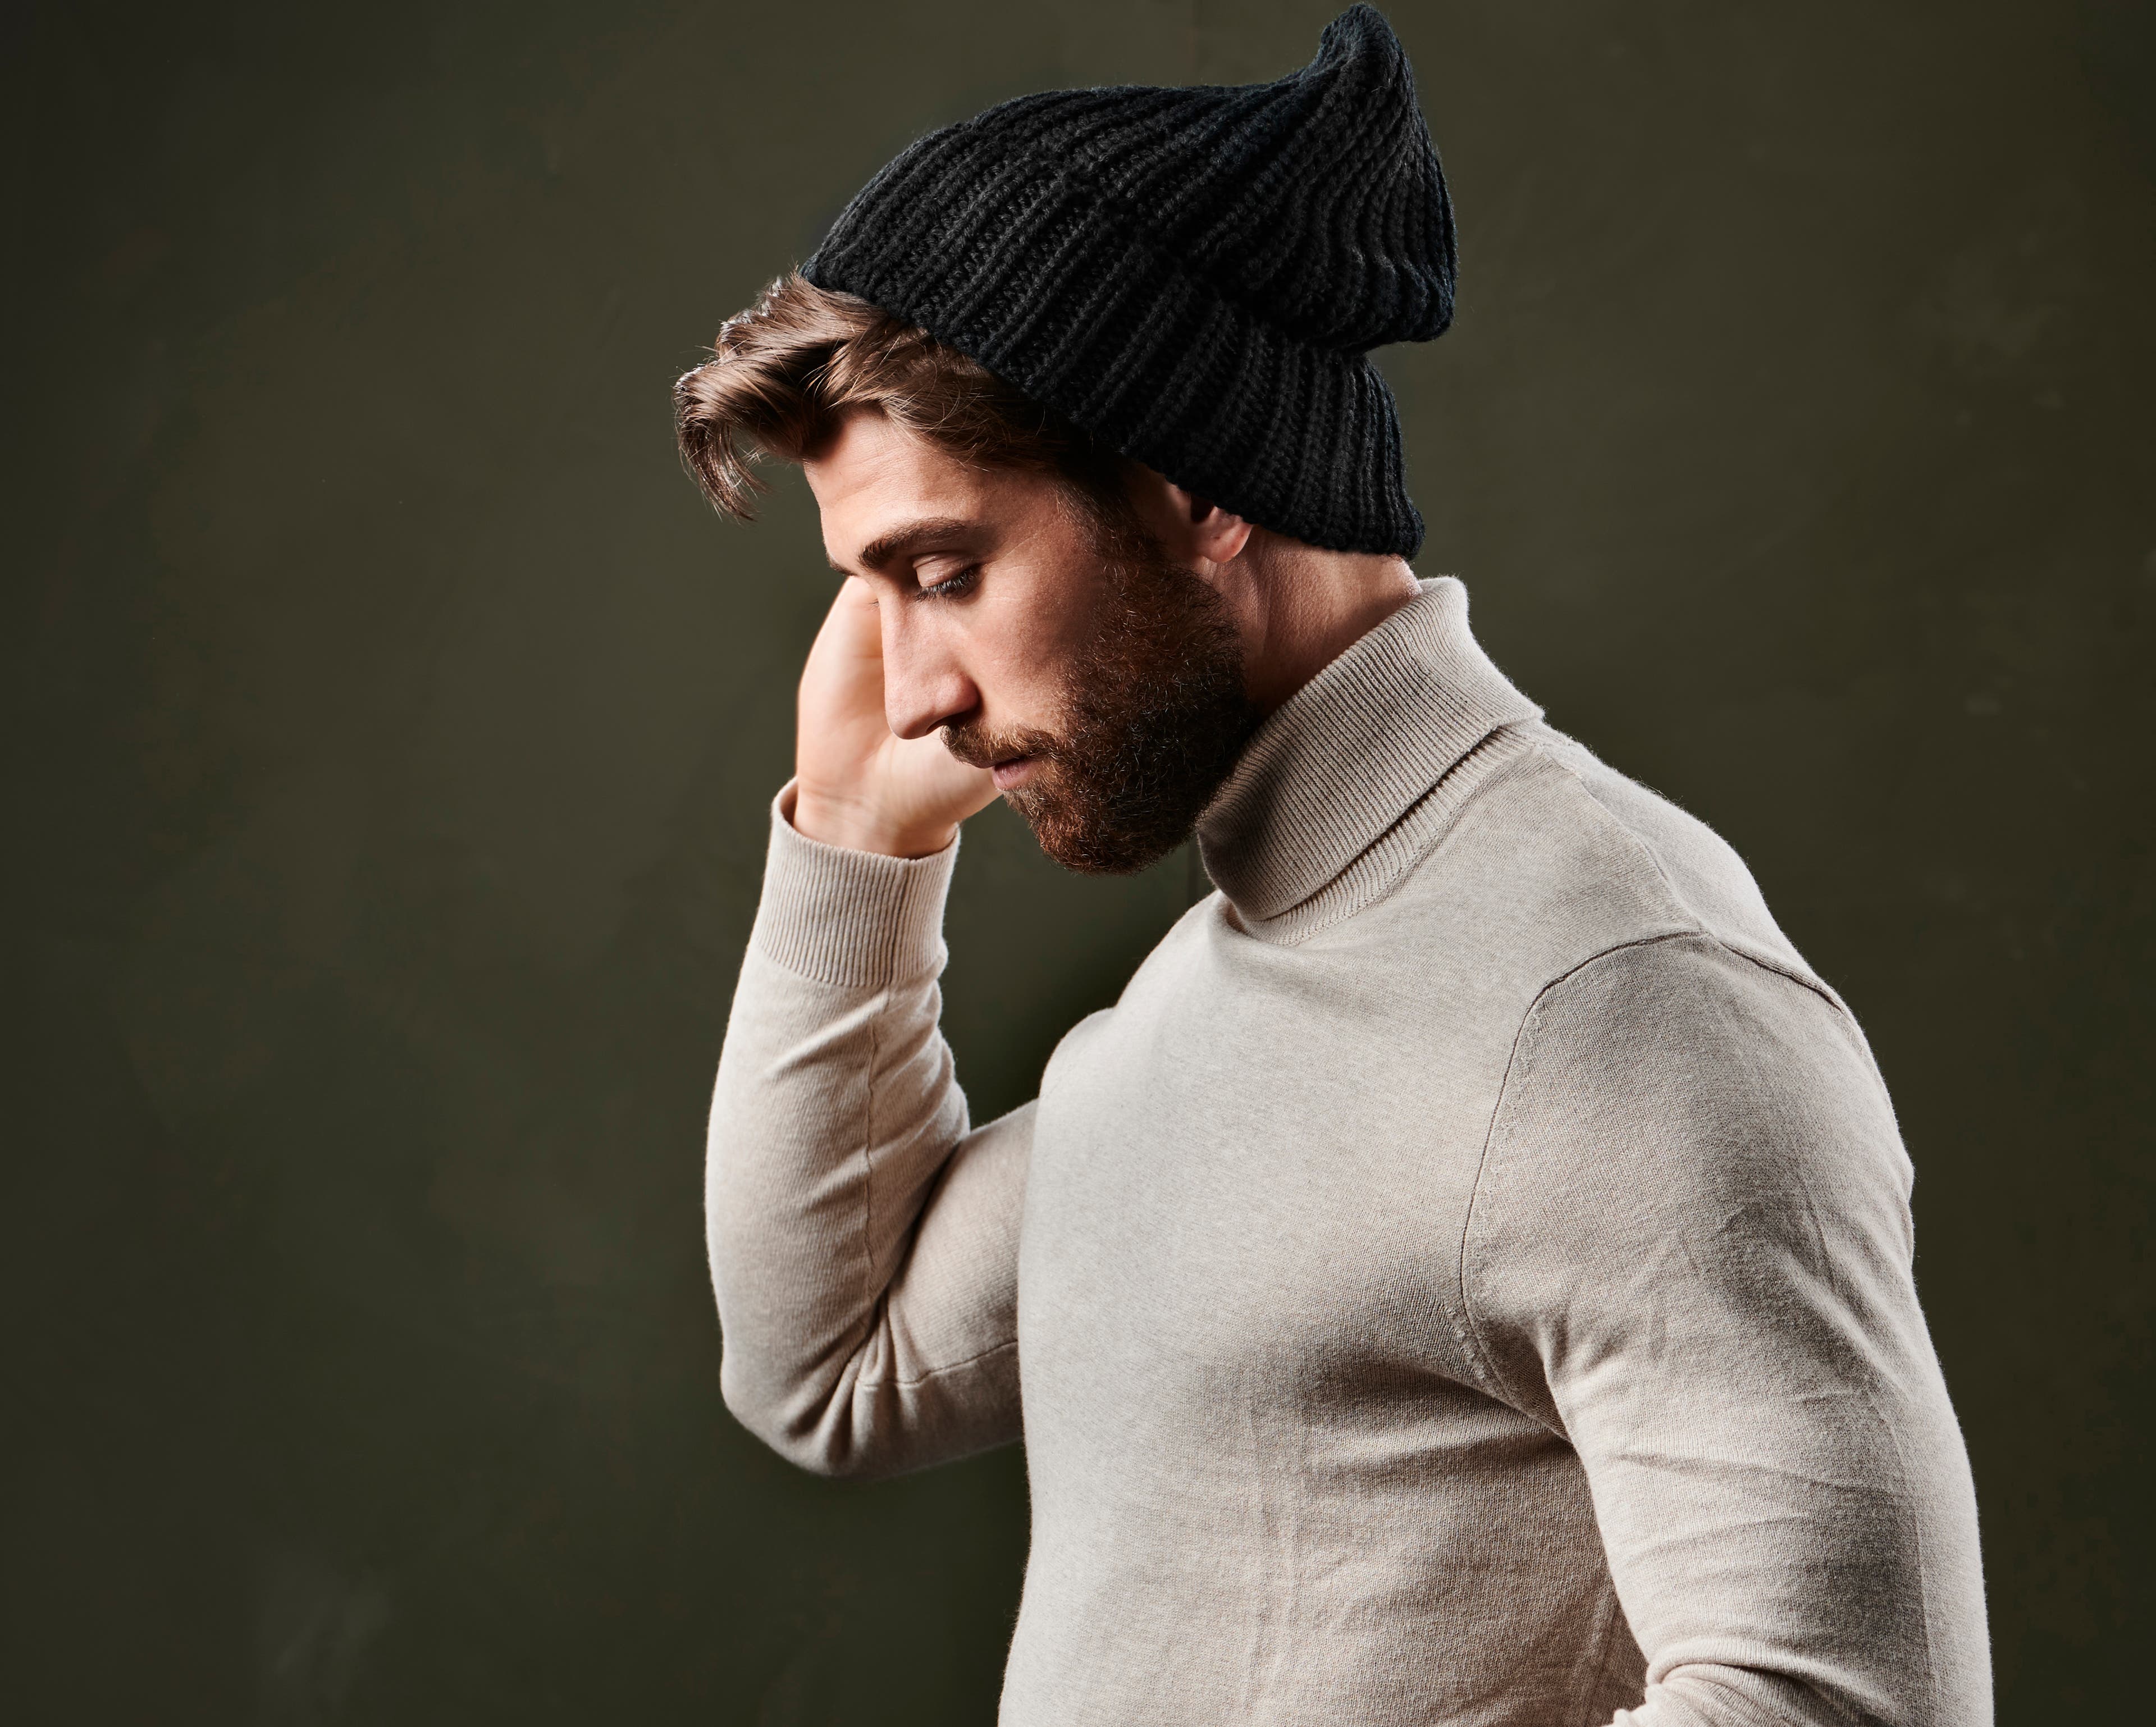 Come indossare un berretto: la guida completa per gli uomini